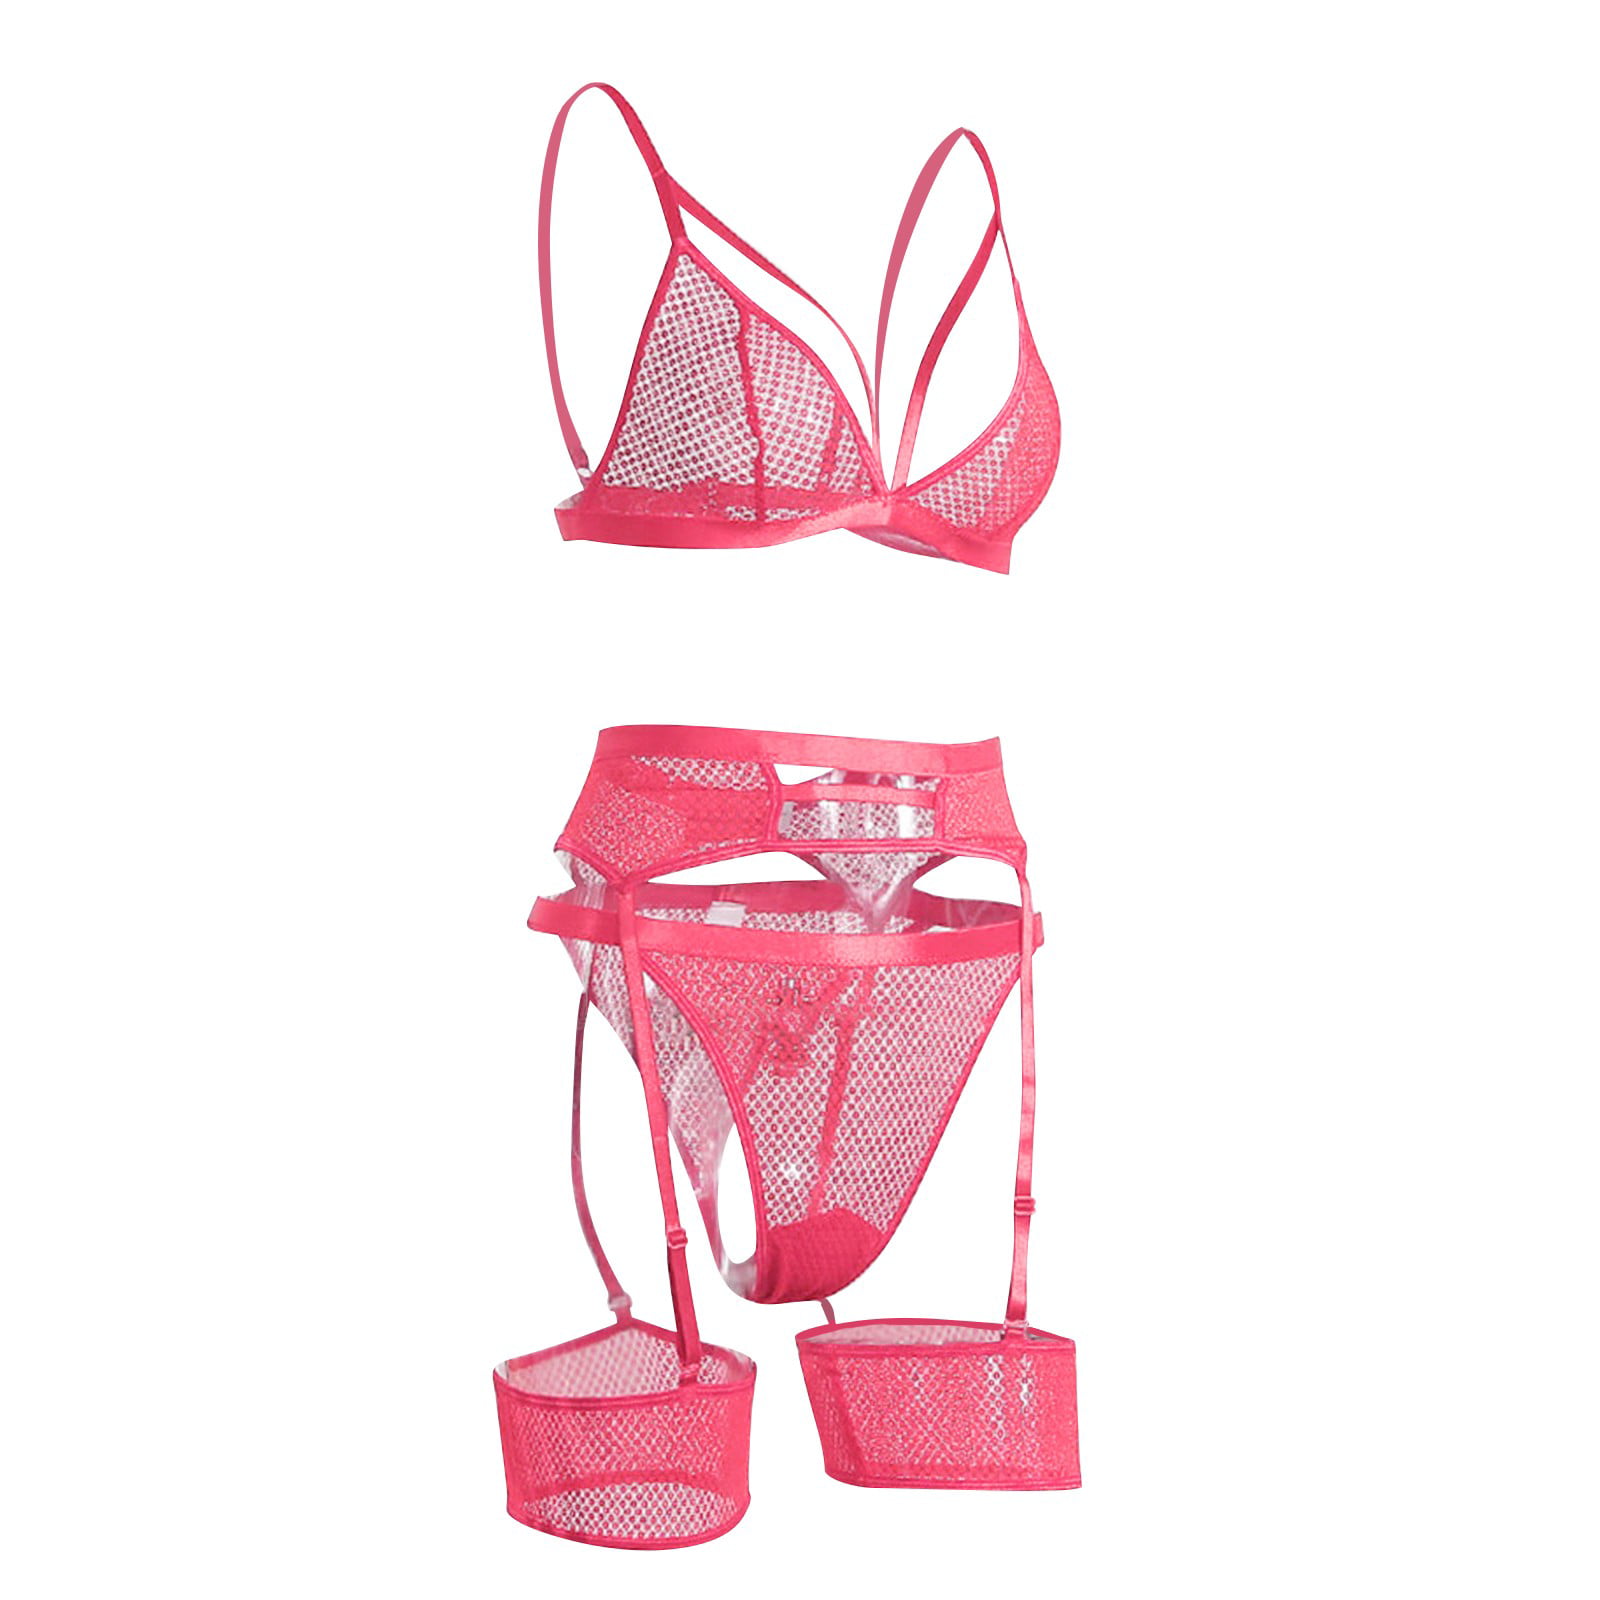 Lingerie for Women Bra Set Lingerie Set Lace Hot Pink Xl 